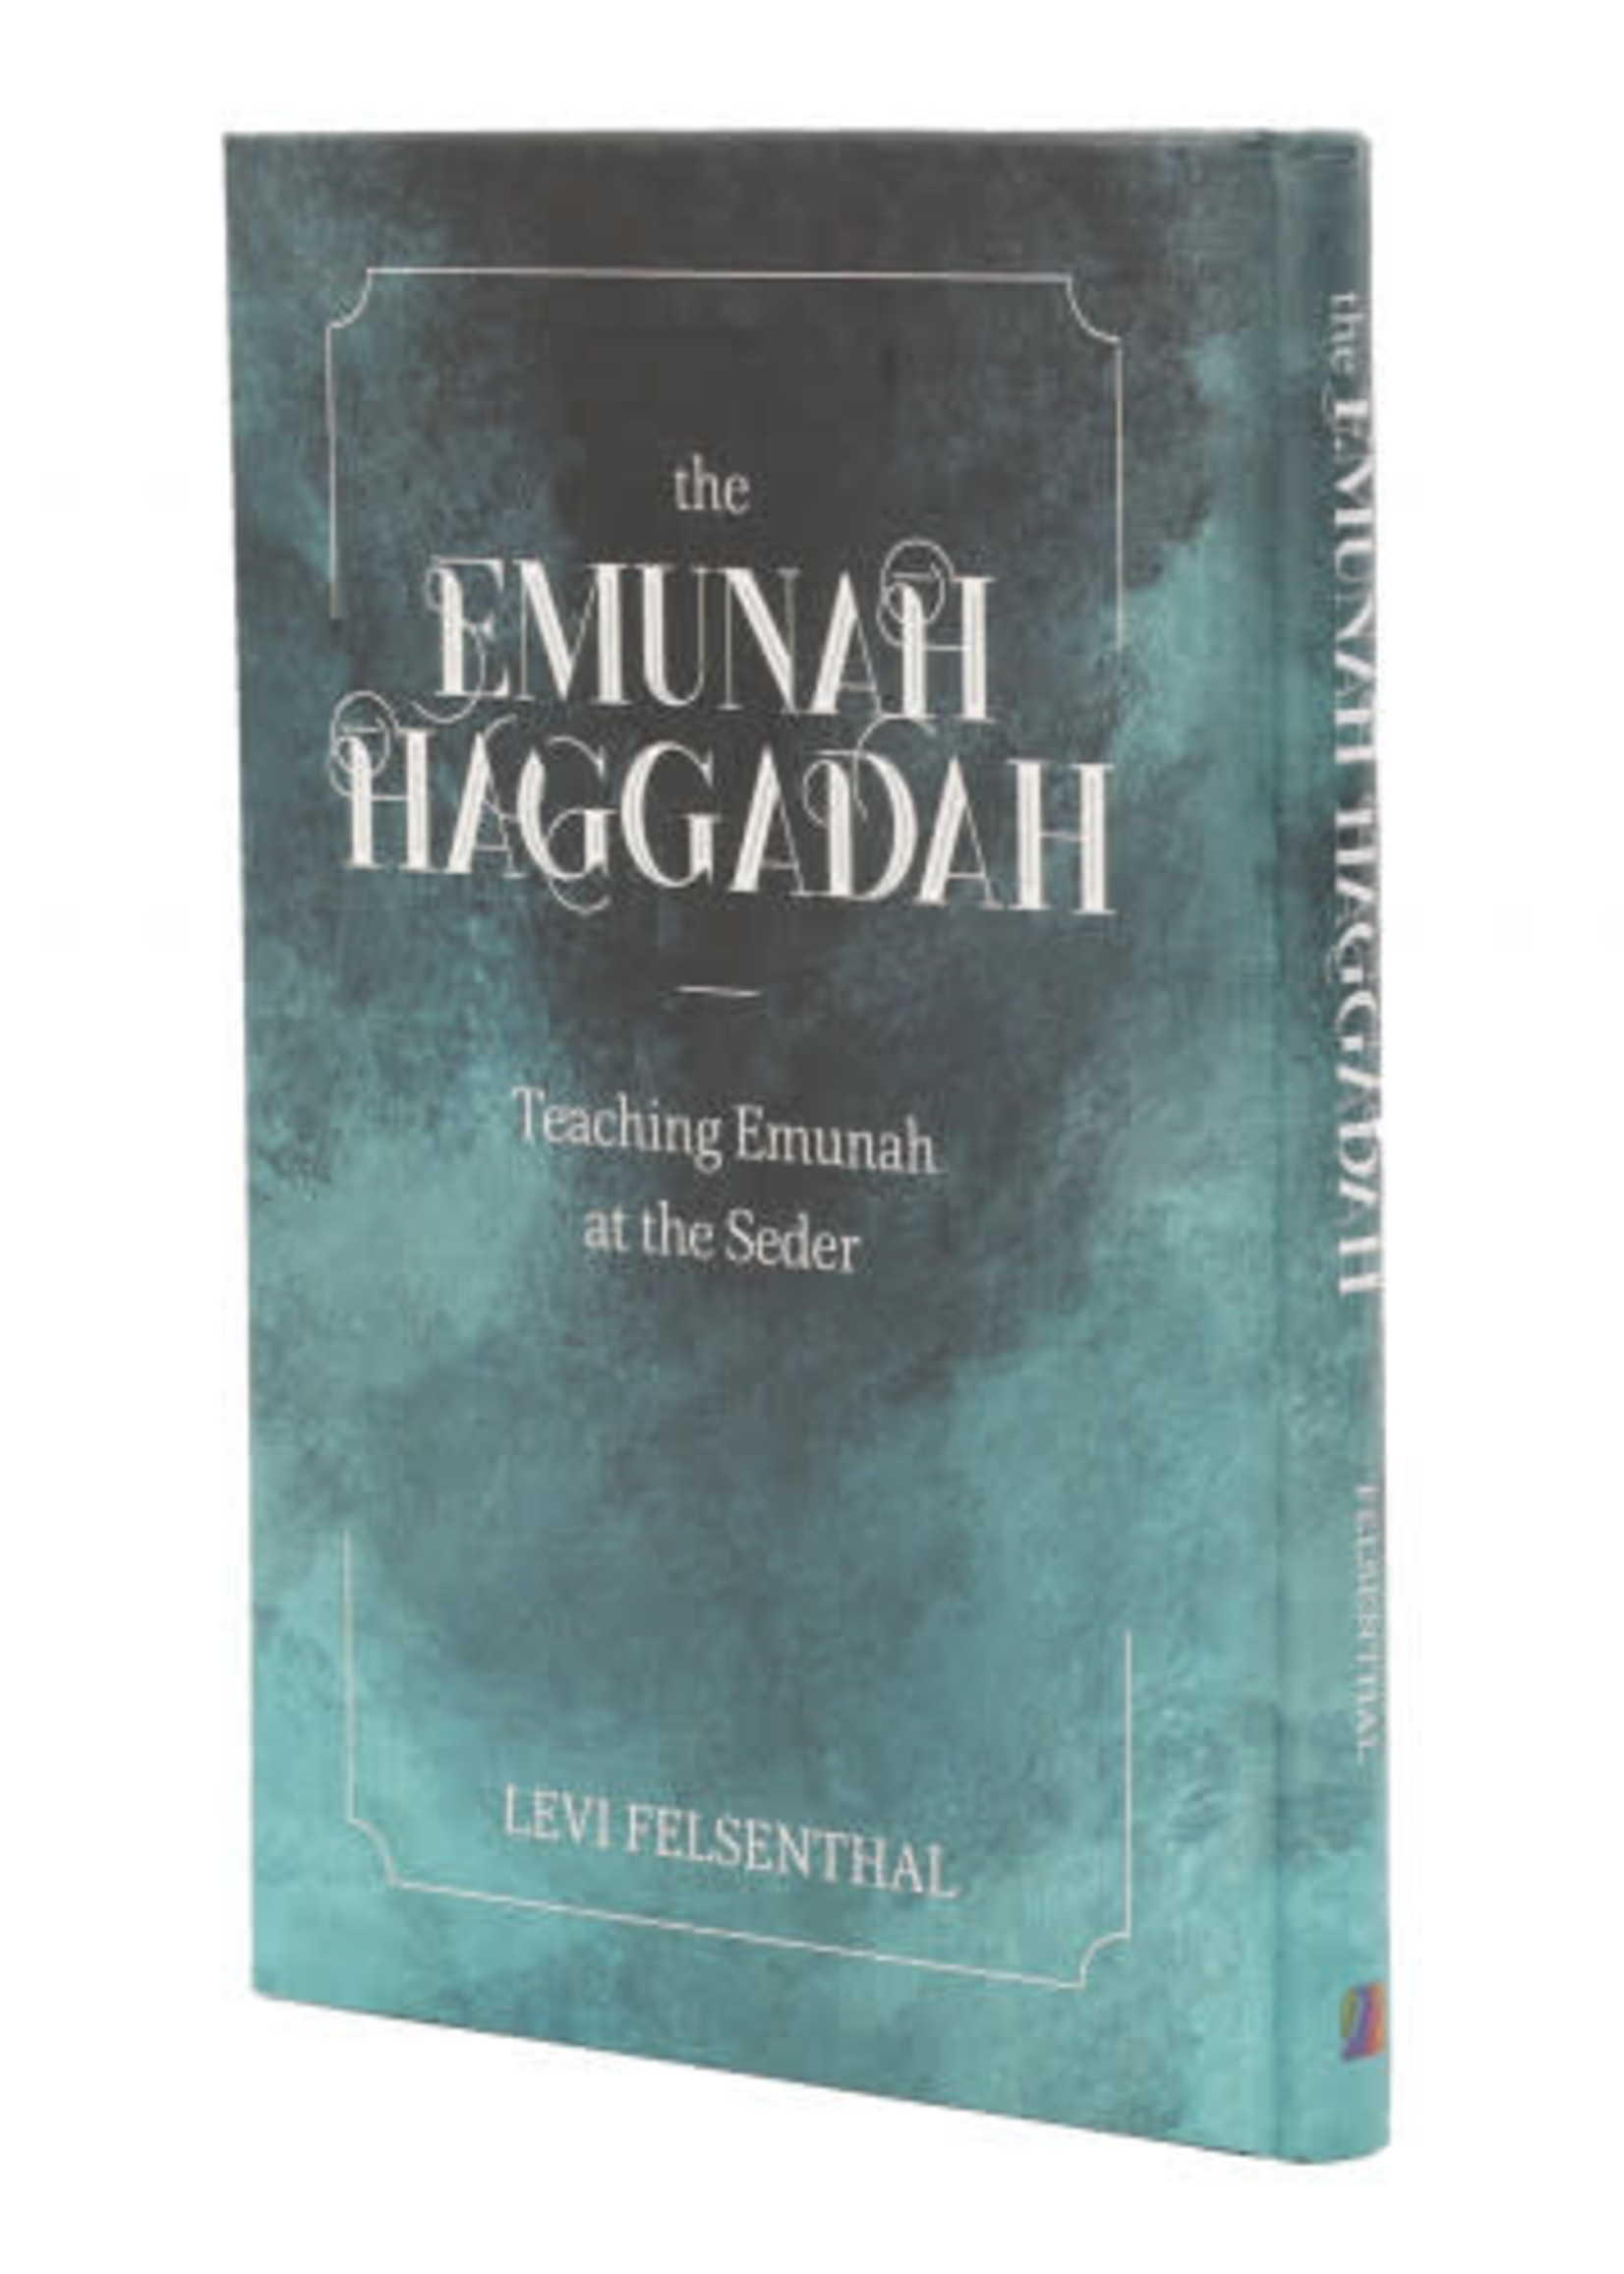 The Emunah Hagadah